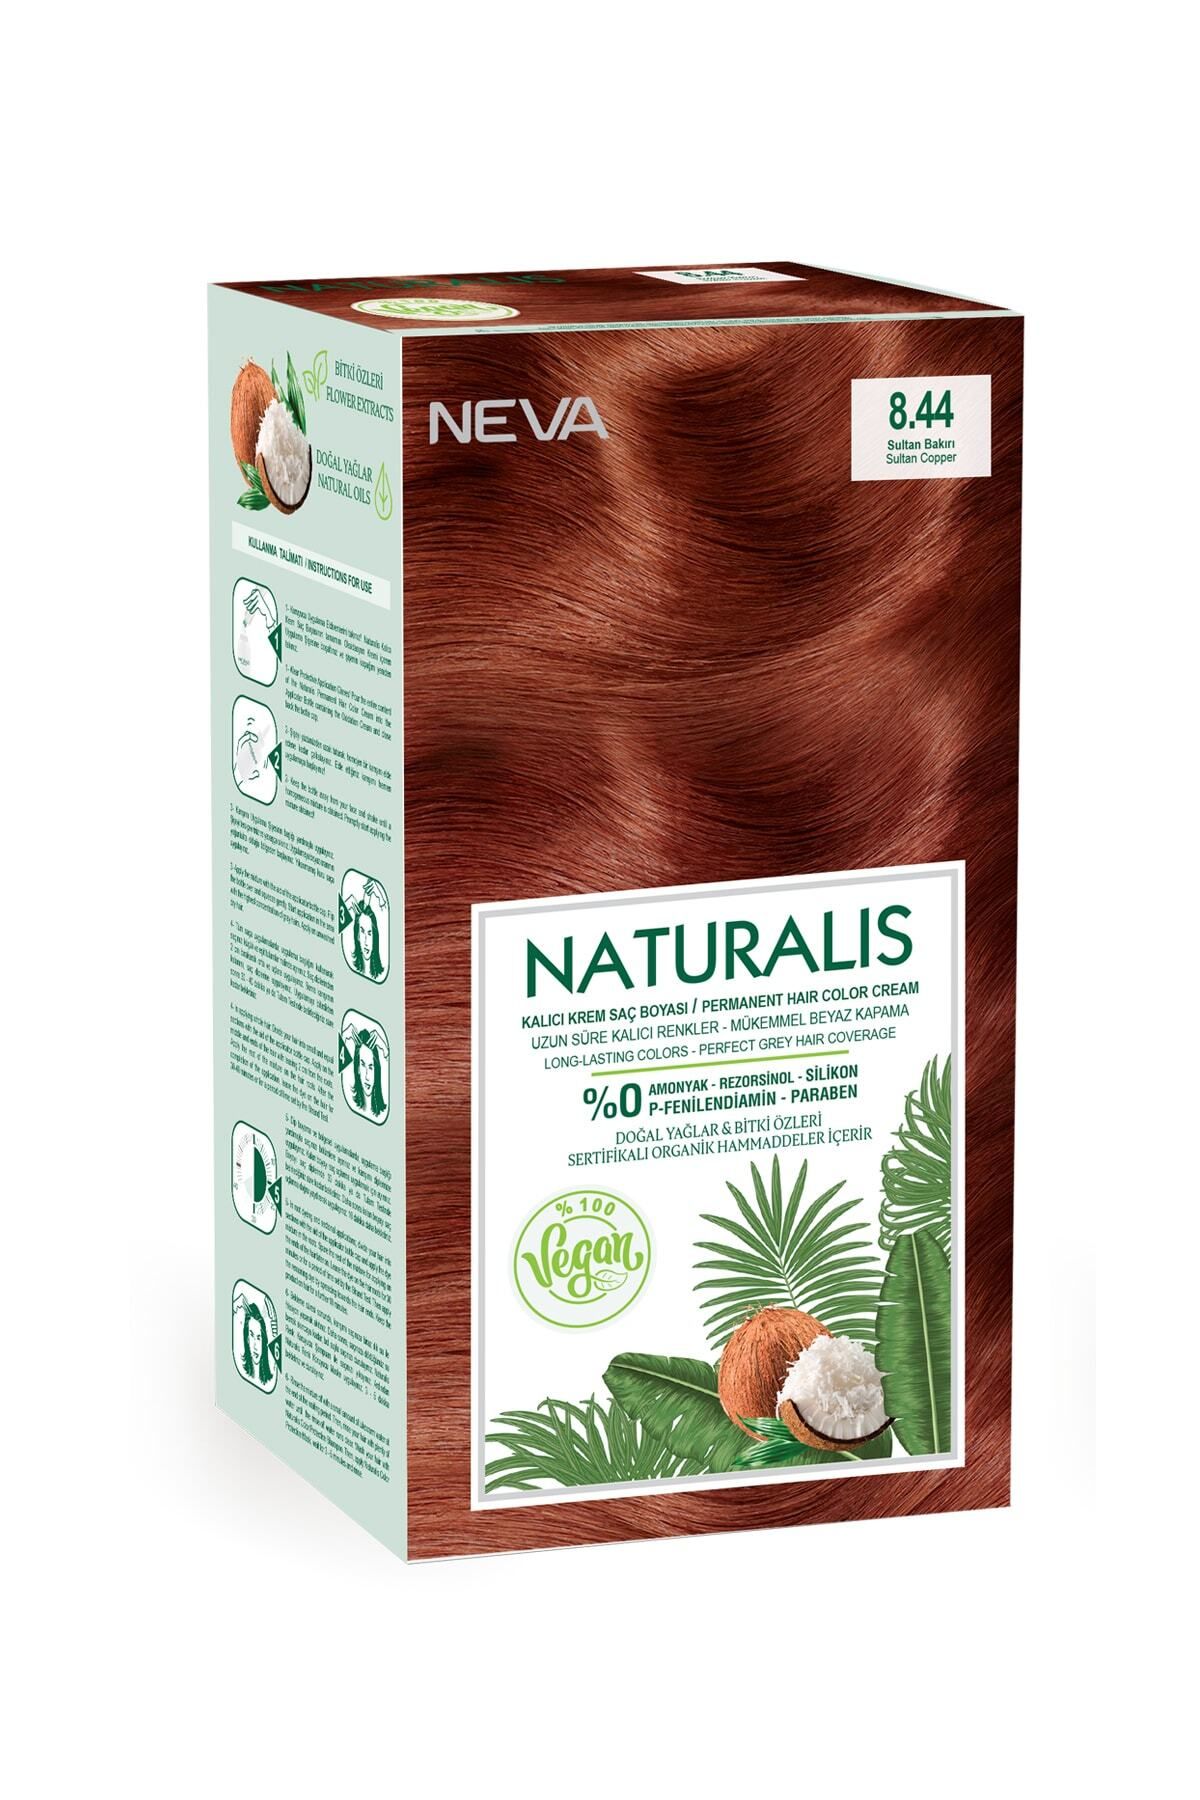 NEVA KOZMETİK Naturalis Saç Boyası 8.44 Sultan Bakırı %100 Vegan